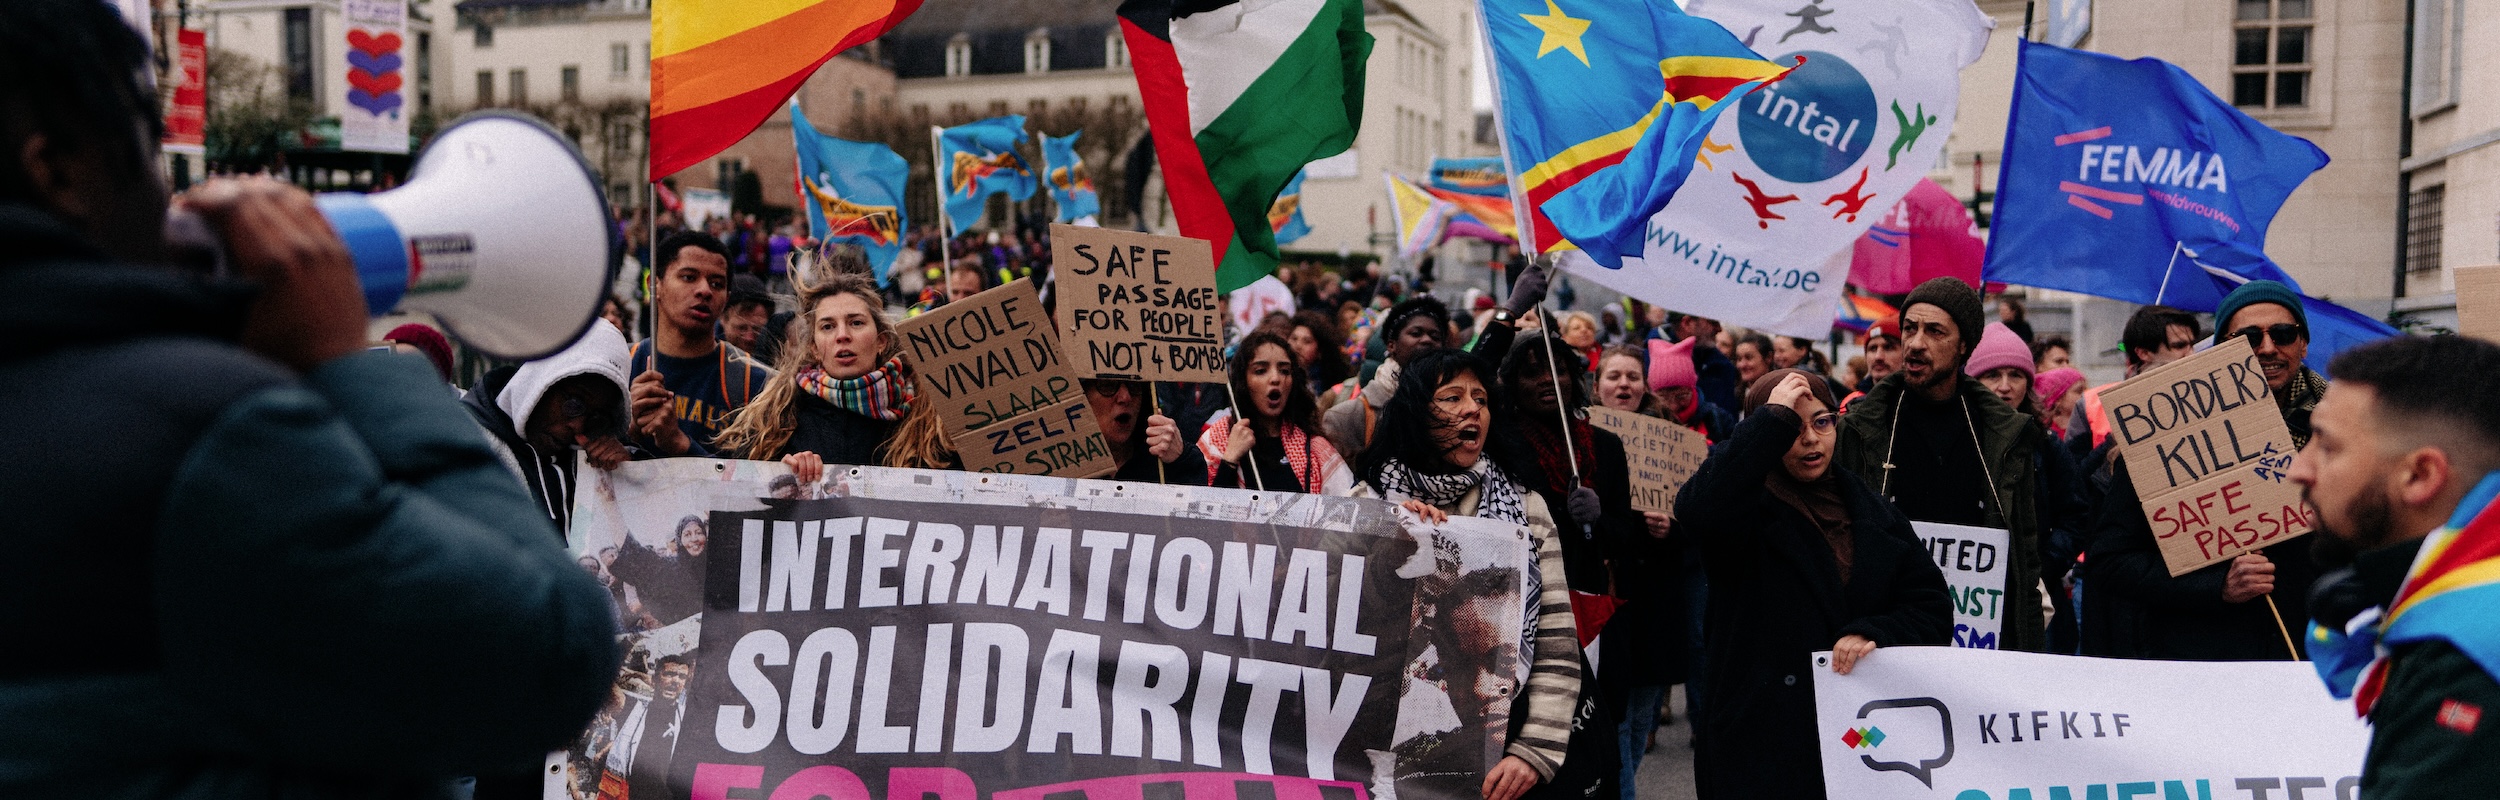 Kif Kif, Intal Globalize en tientallen andere organisaties die strijden tegen racisme protesteren op 24 maart in Brussel tijden de Mars tegen Racisme.